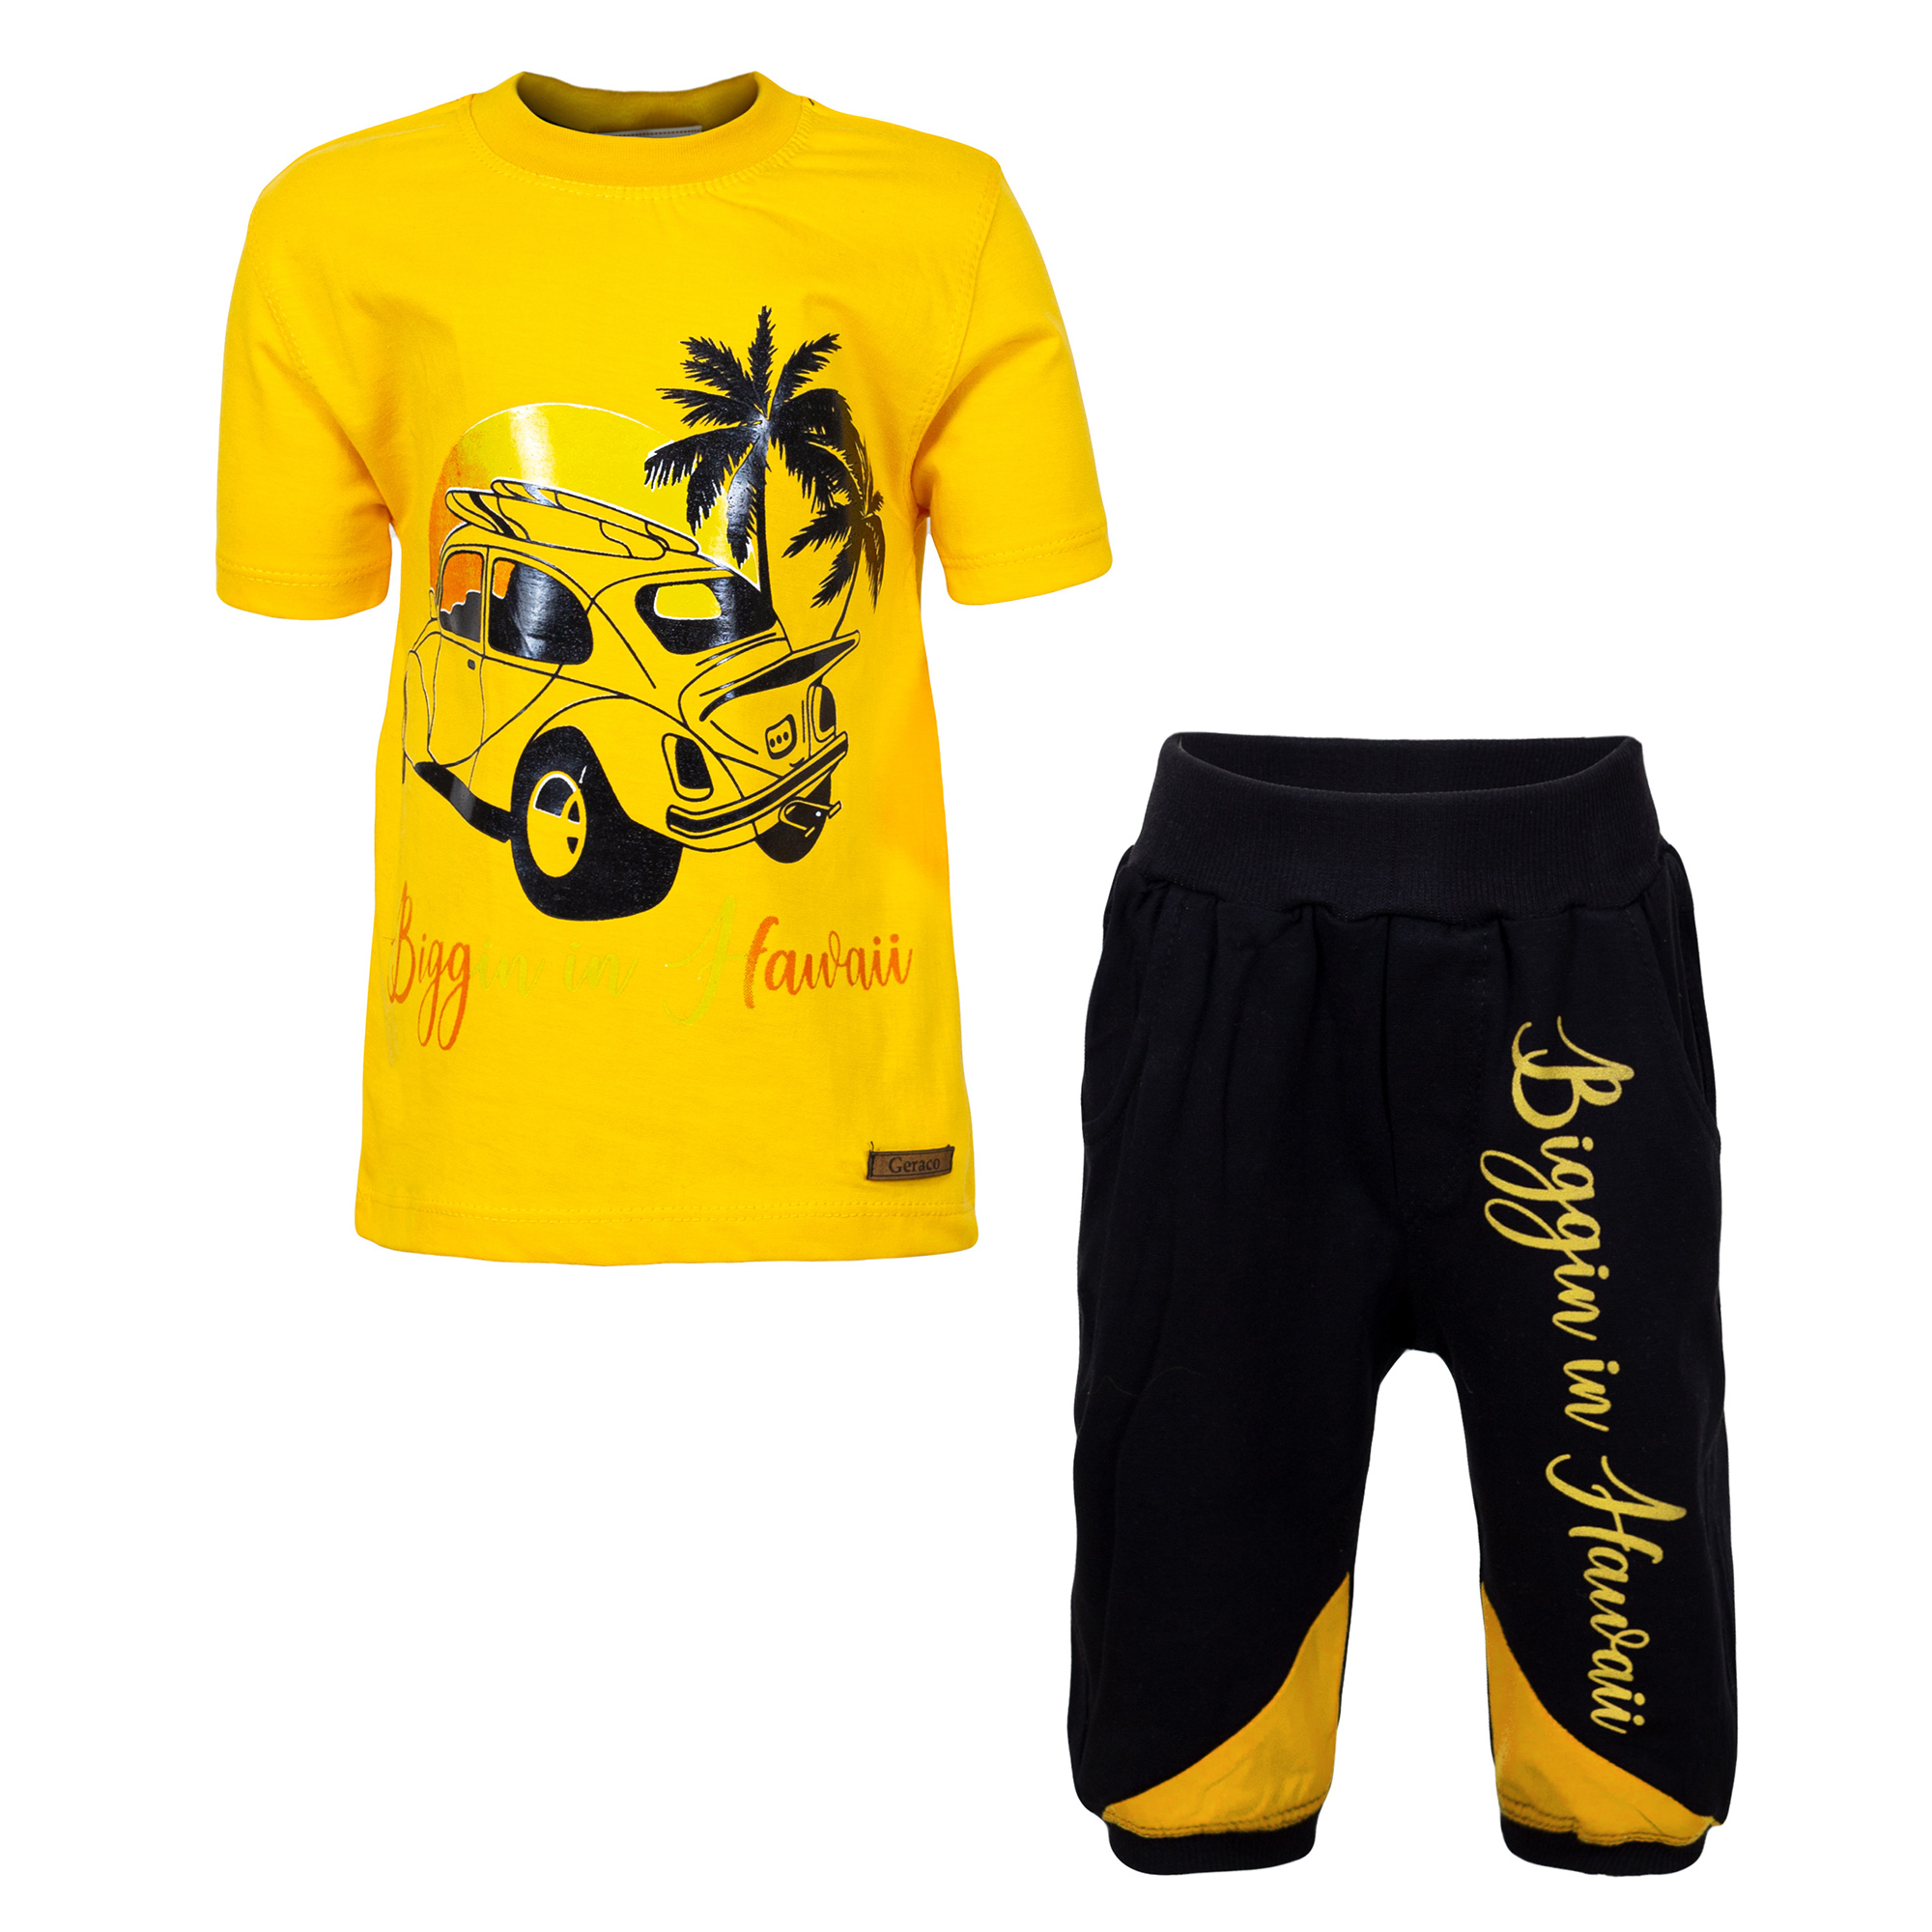 ست تی شرت و شلوارک پسرانه مدل هاوایی رنگ زرد